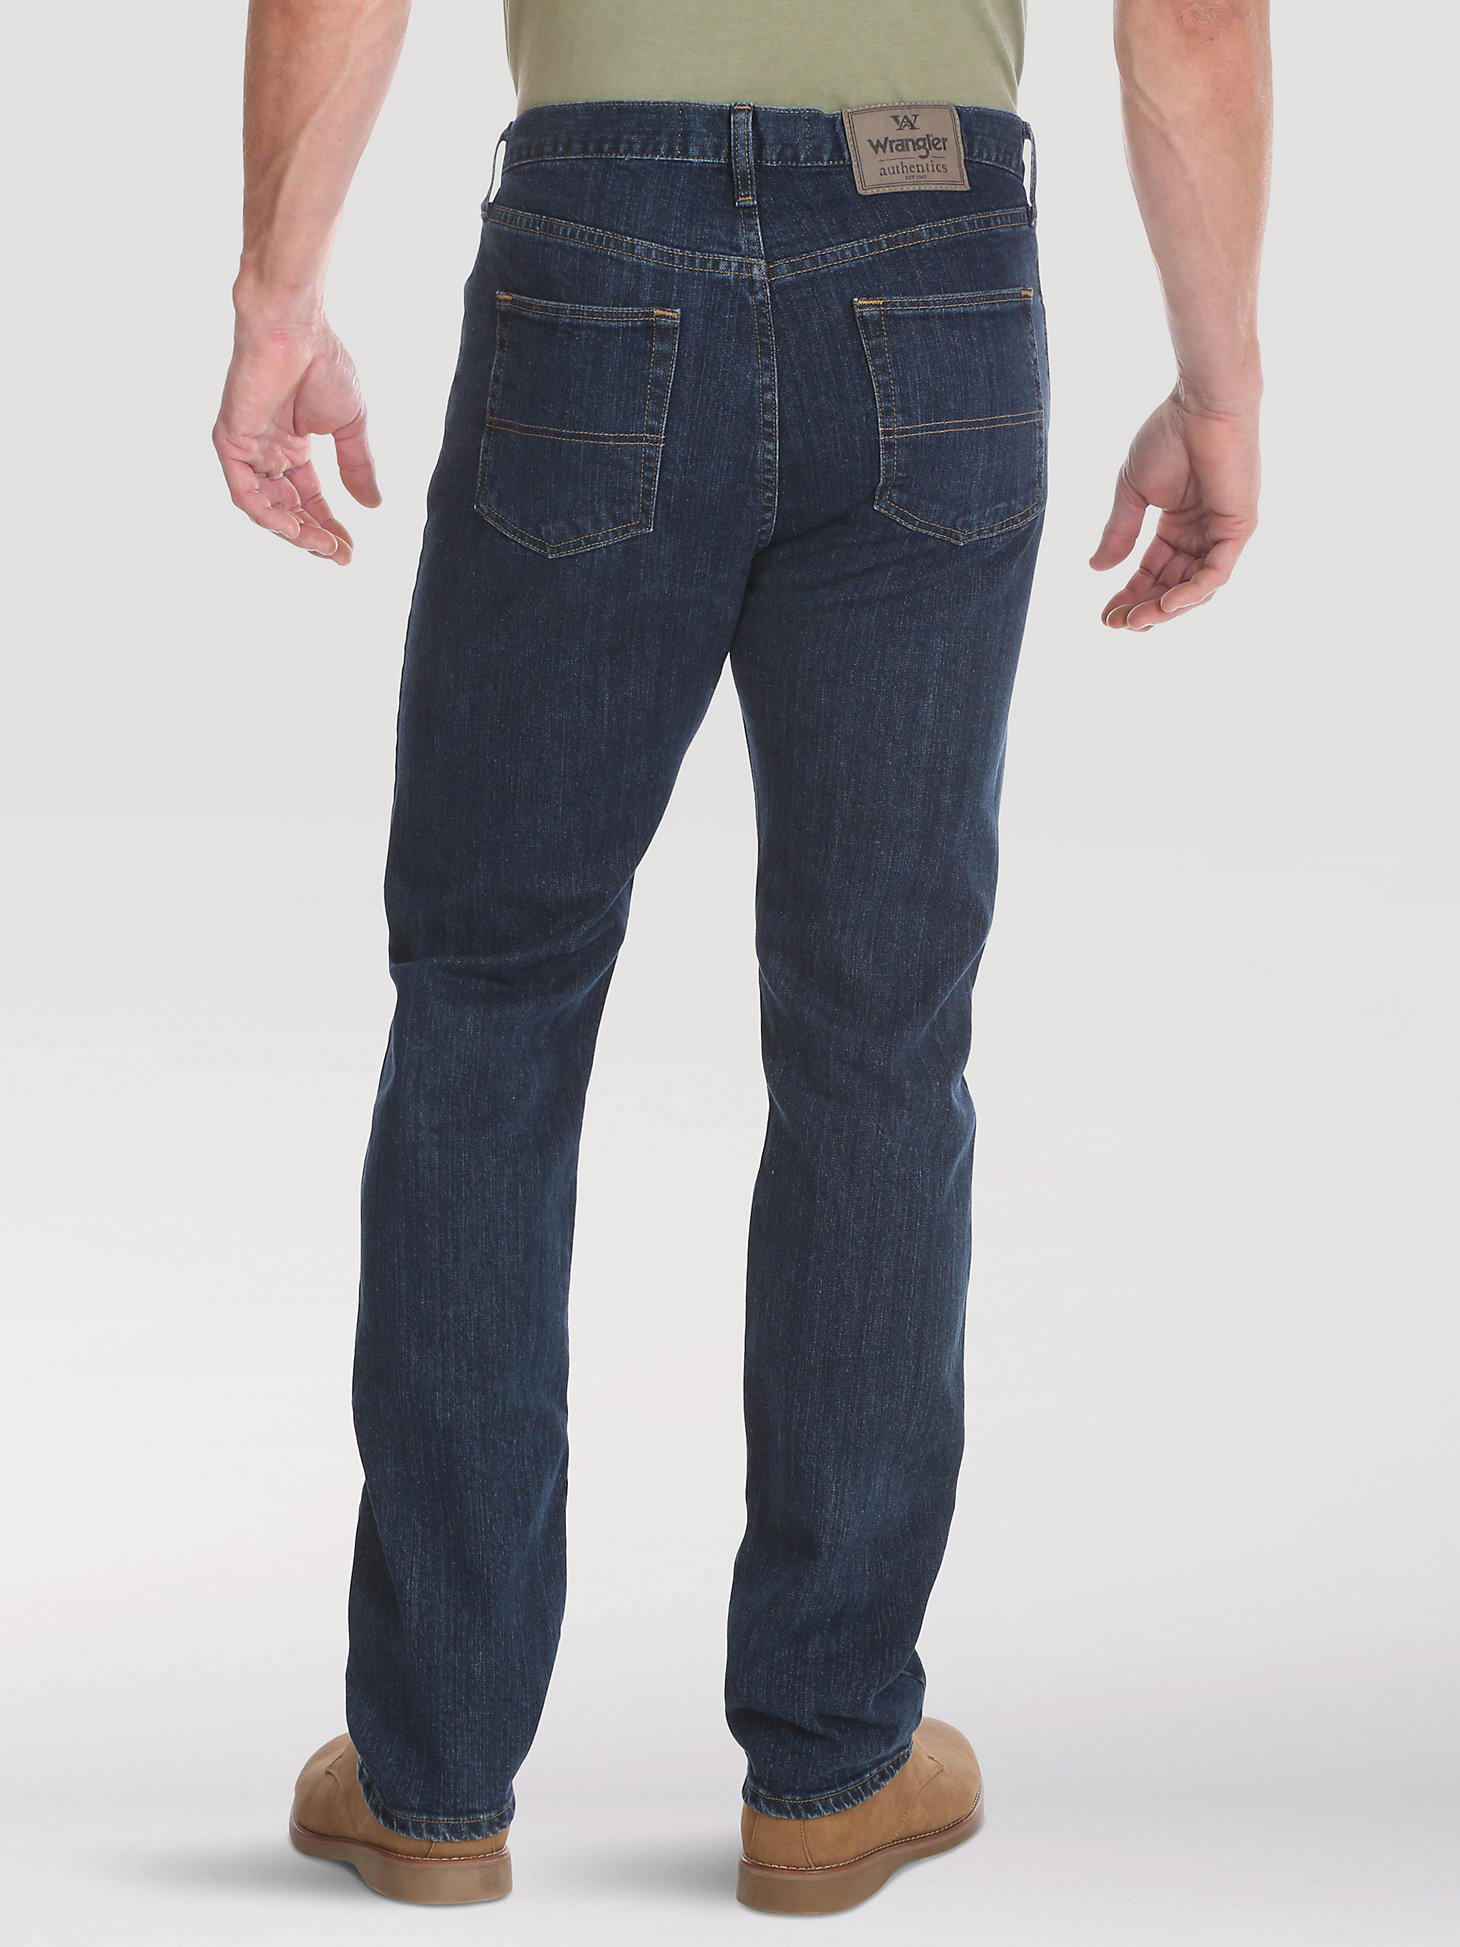 Wrangler Authentics Mens Classic 5-Pocket Regular Fit Flex Jean 